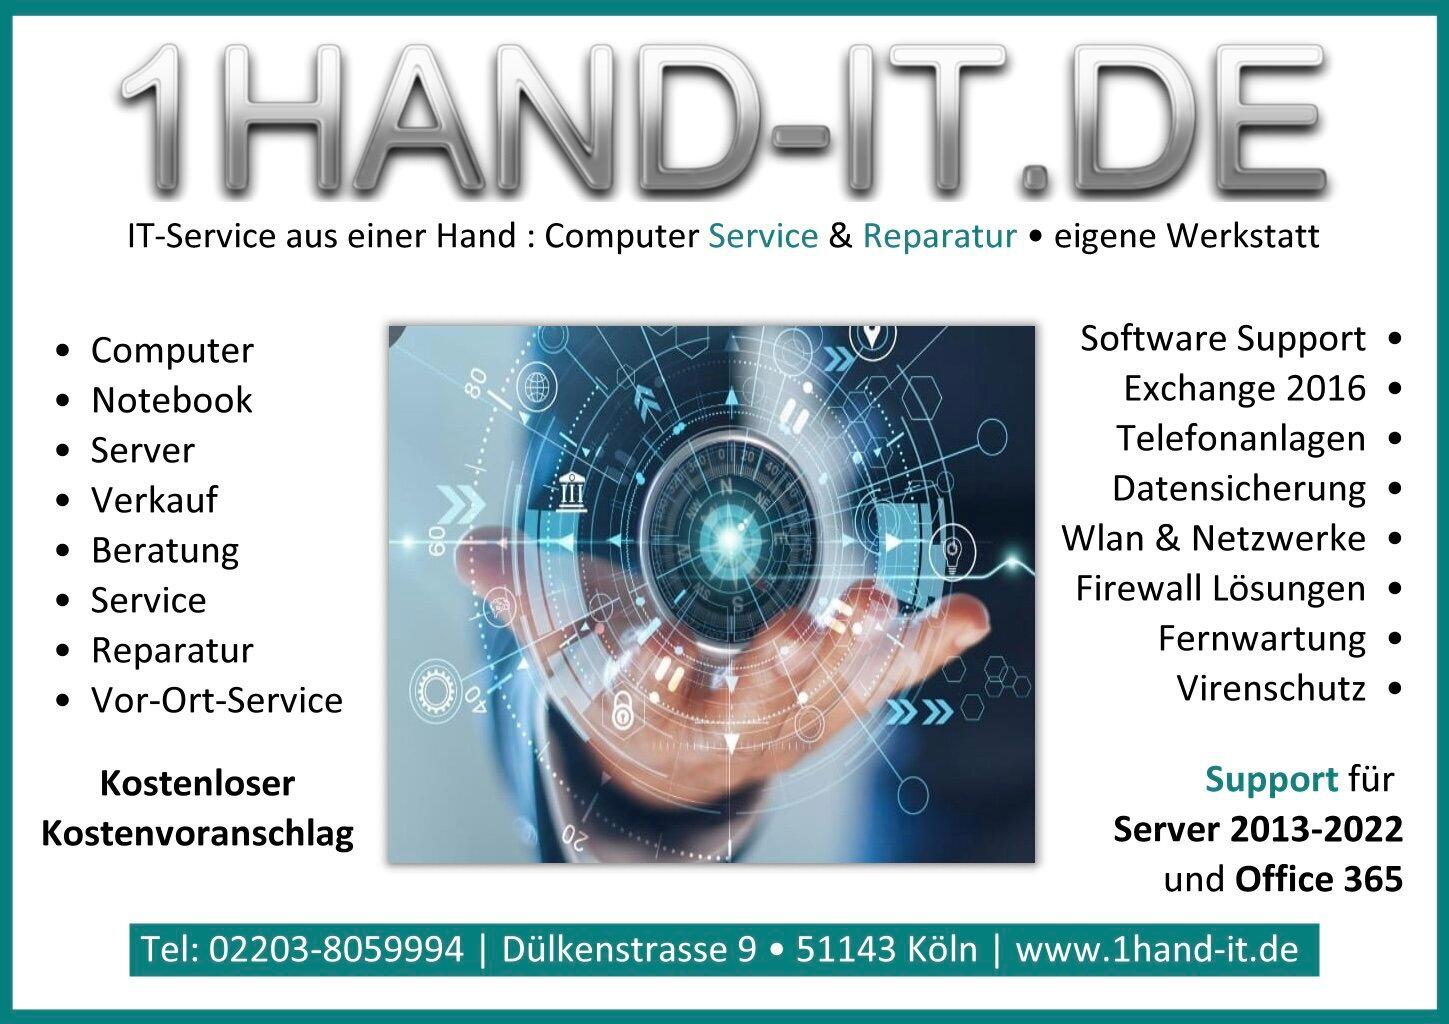 Bilder one Hand IT Service